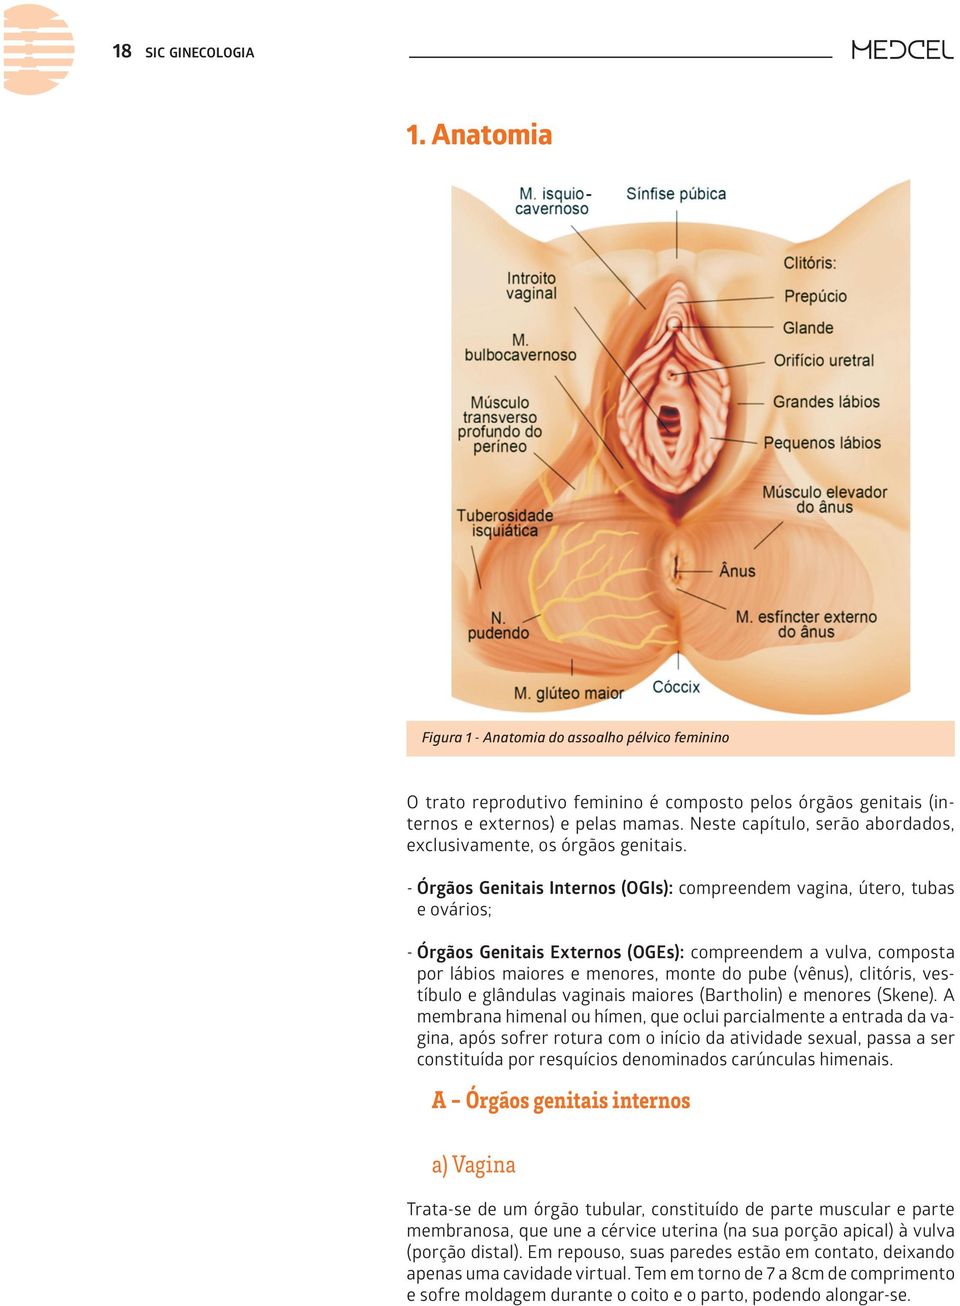 --Órgãos Genitais Internos (OGIs): compreendem vagina, útero, tubas e ovários; --Órgãos Genitais Externos (OGEs): compreendem a vulva, composta por lábios maiores e menores, monte do pube (vênus),